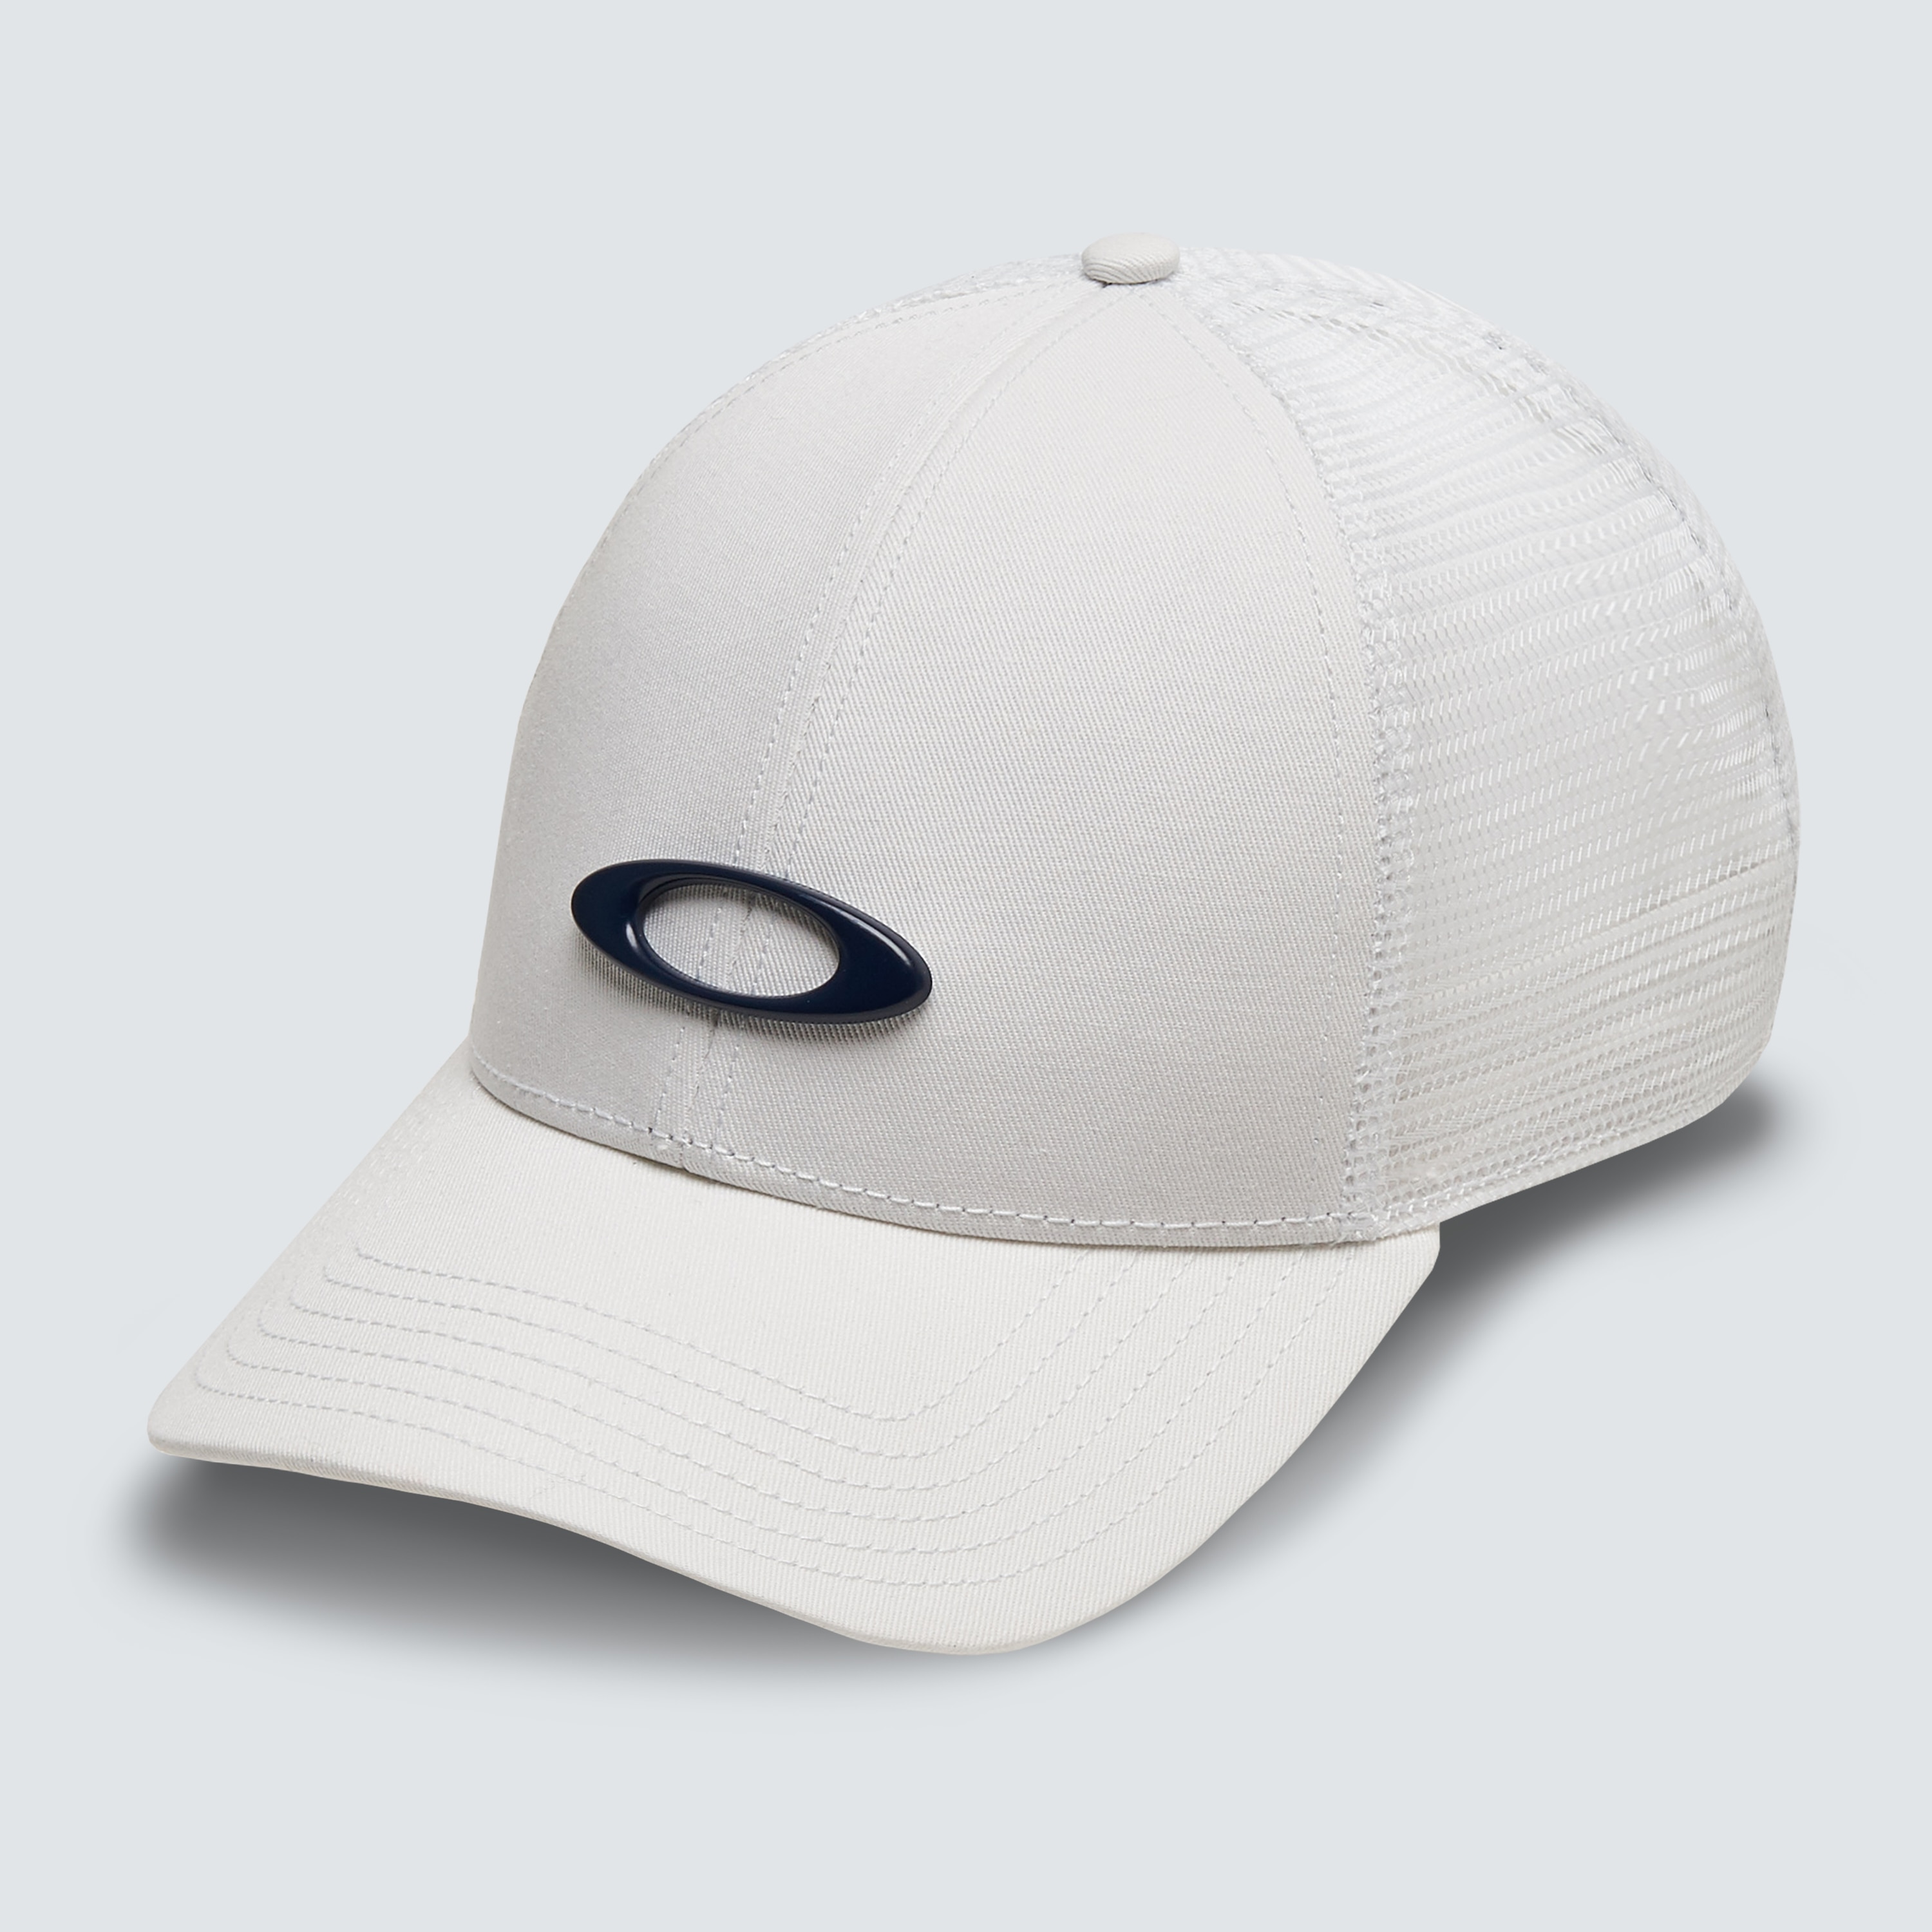 Oakley Trucker Ellipse Hat - White - FOS900005-100 | Oakley OSI Store ...